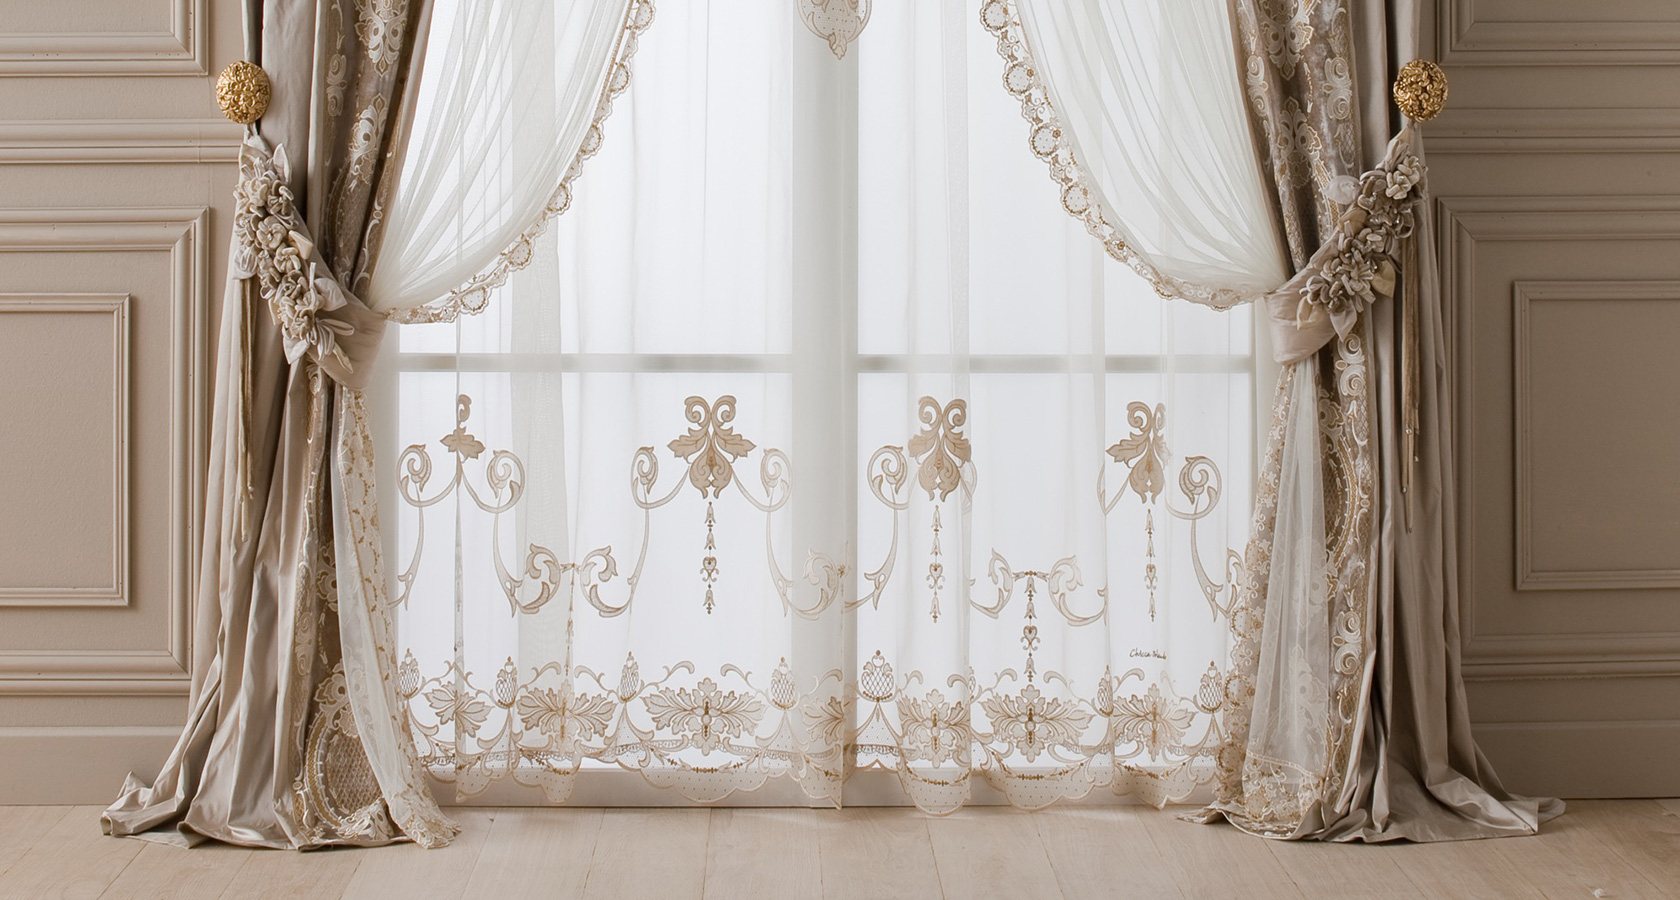 Итальянские шторы, фото итальянского стиля в интерьере гостиной или спальной комнаты